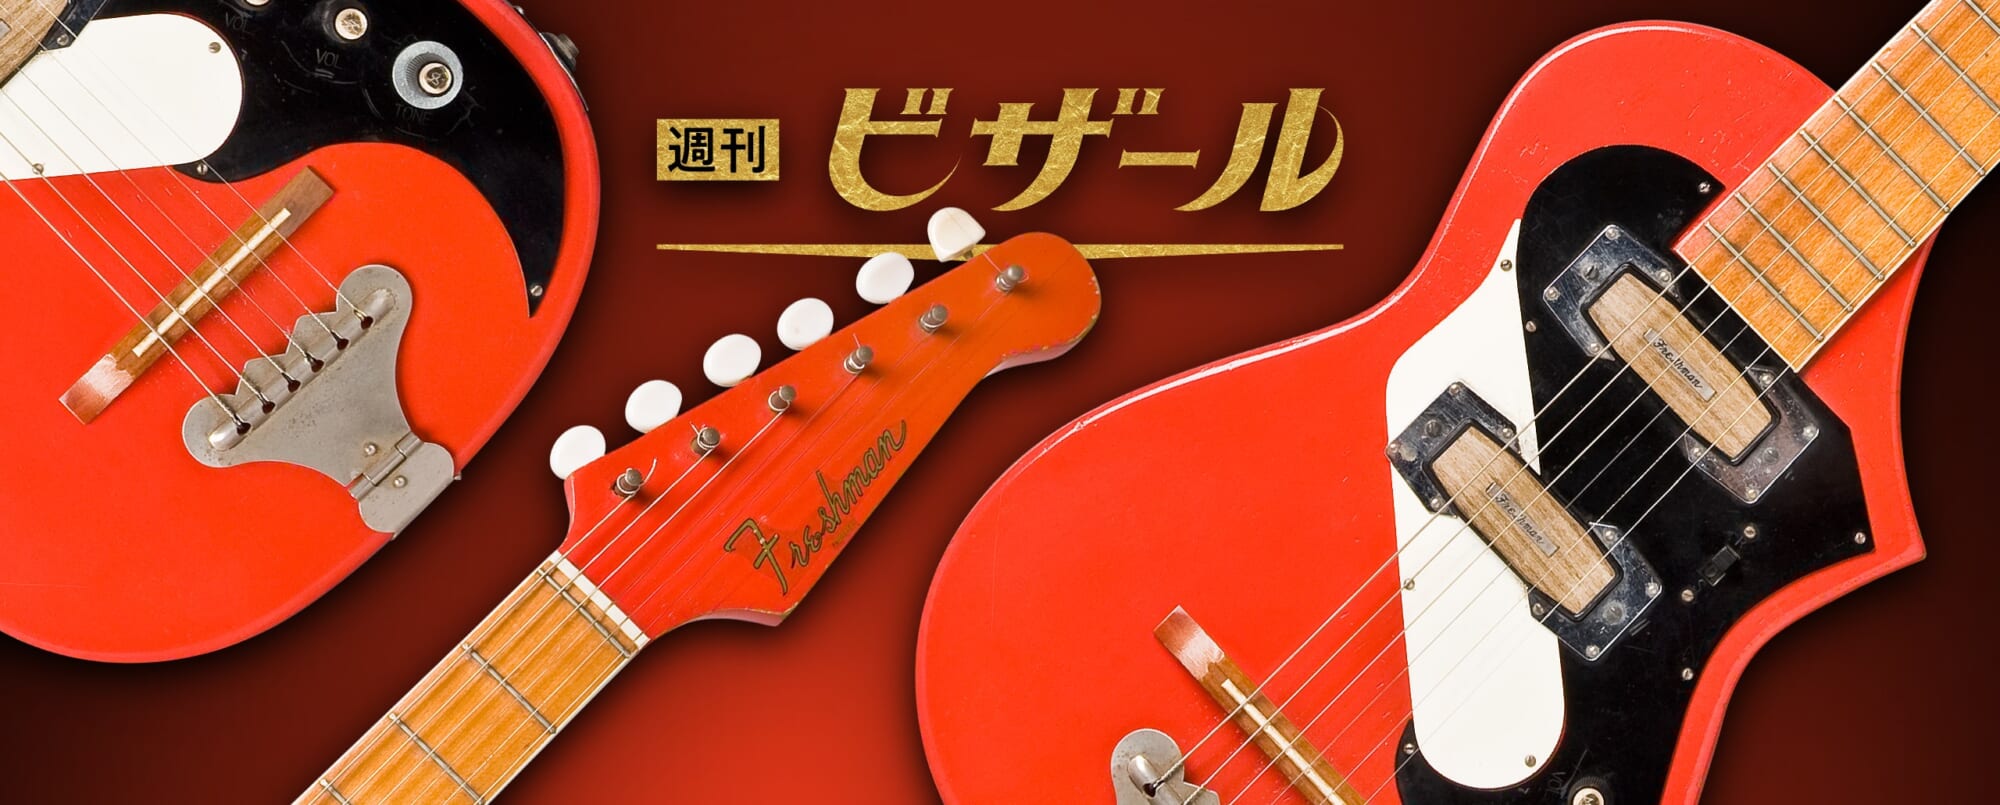 日本生まれの多国籍ギター。セルマー フレッシュマン5800